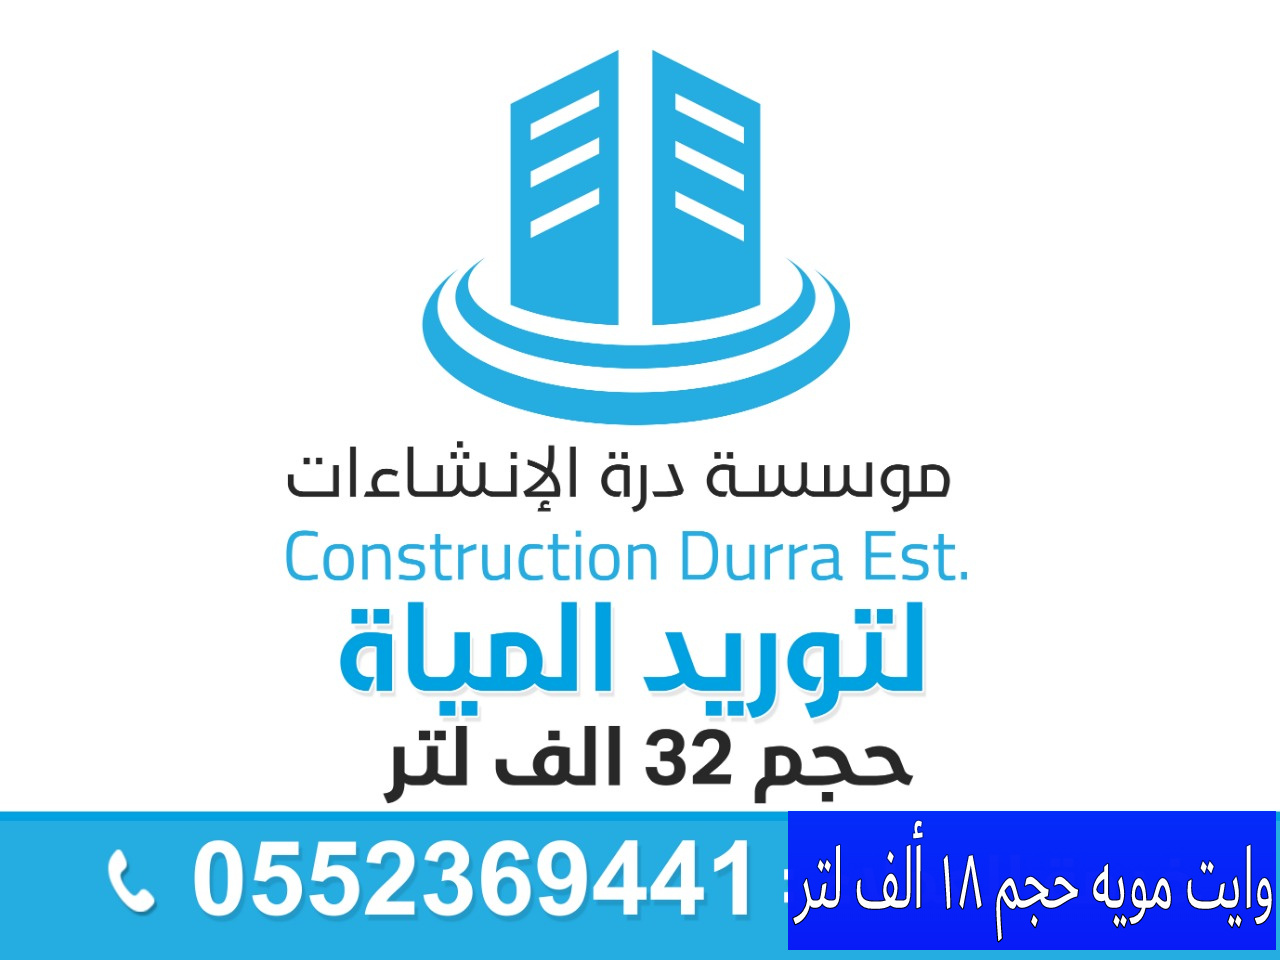 كشف تسربات المياه في الرياض.. 0580221093 وايت مويه في الرياض /مؤسسة درة الإنشاءات  P_1352k8fub0